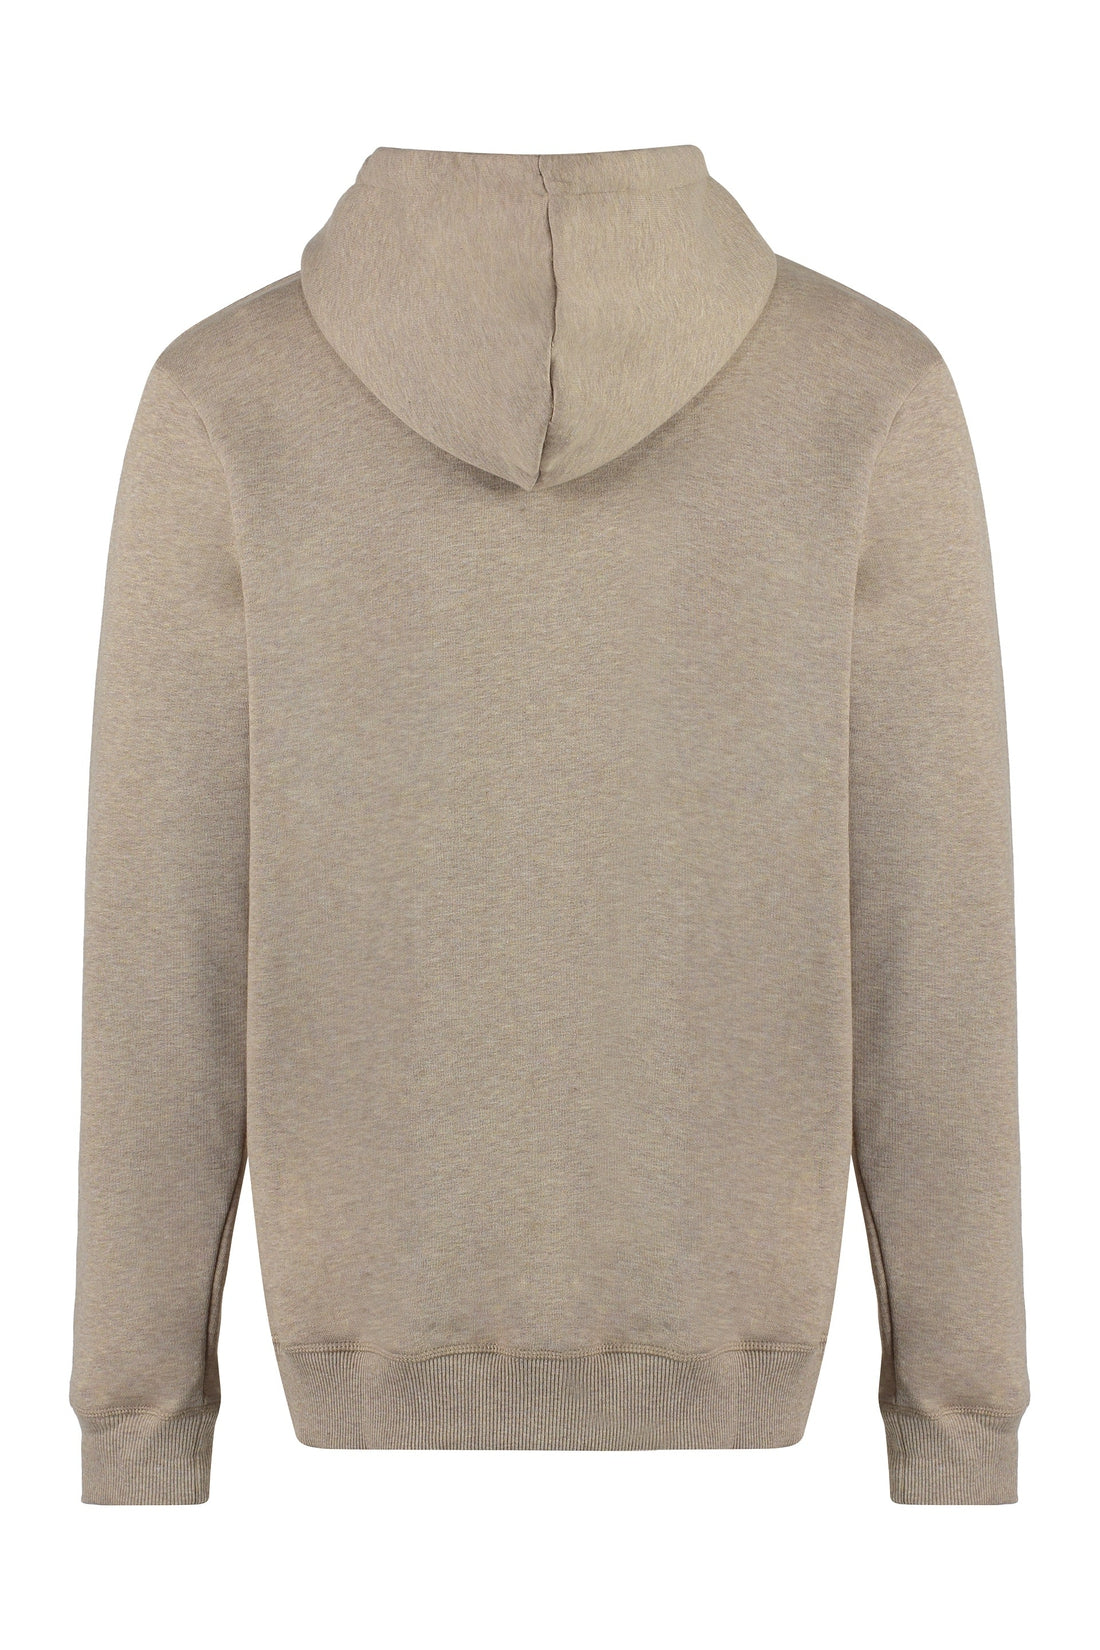 Les Deux-OUTLET-SALE-Crane cotton hoodie-ARCHIVIST